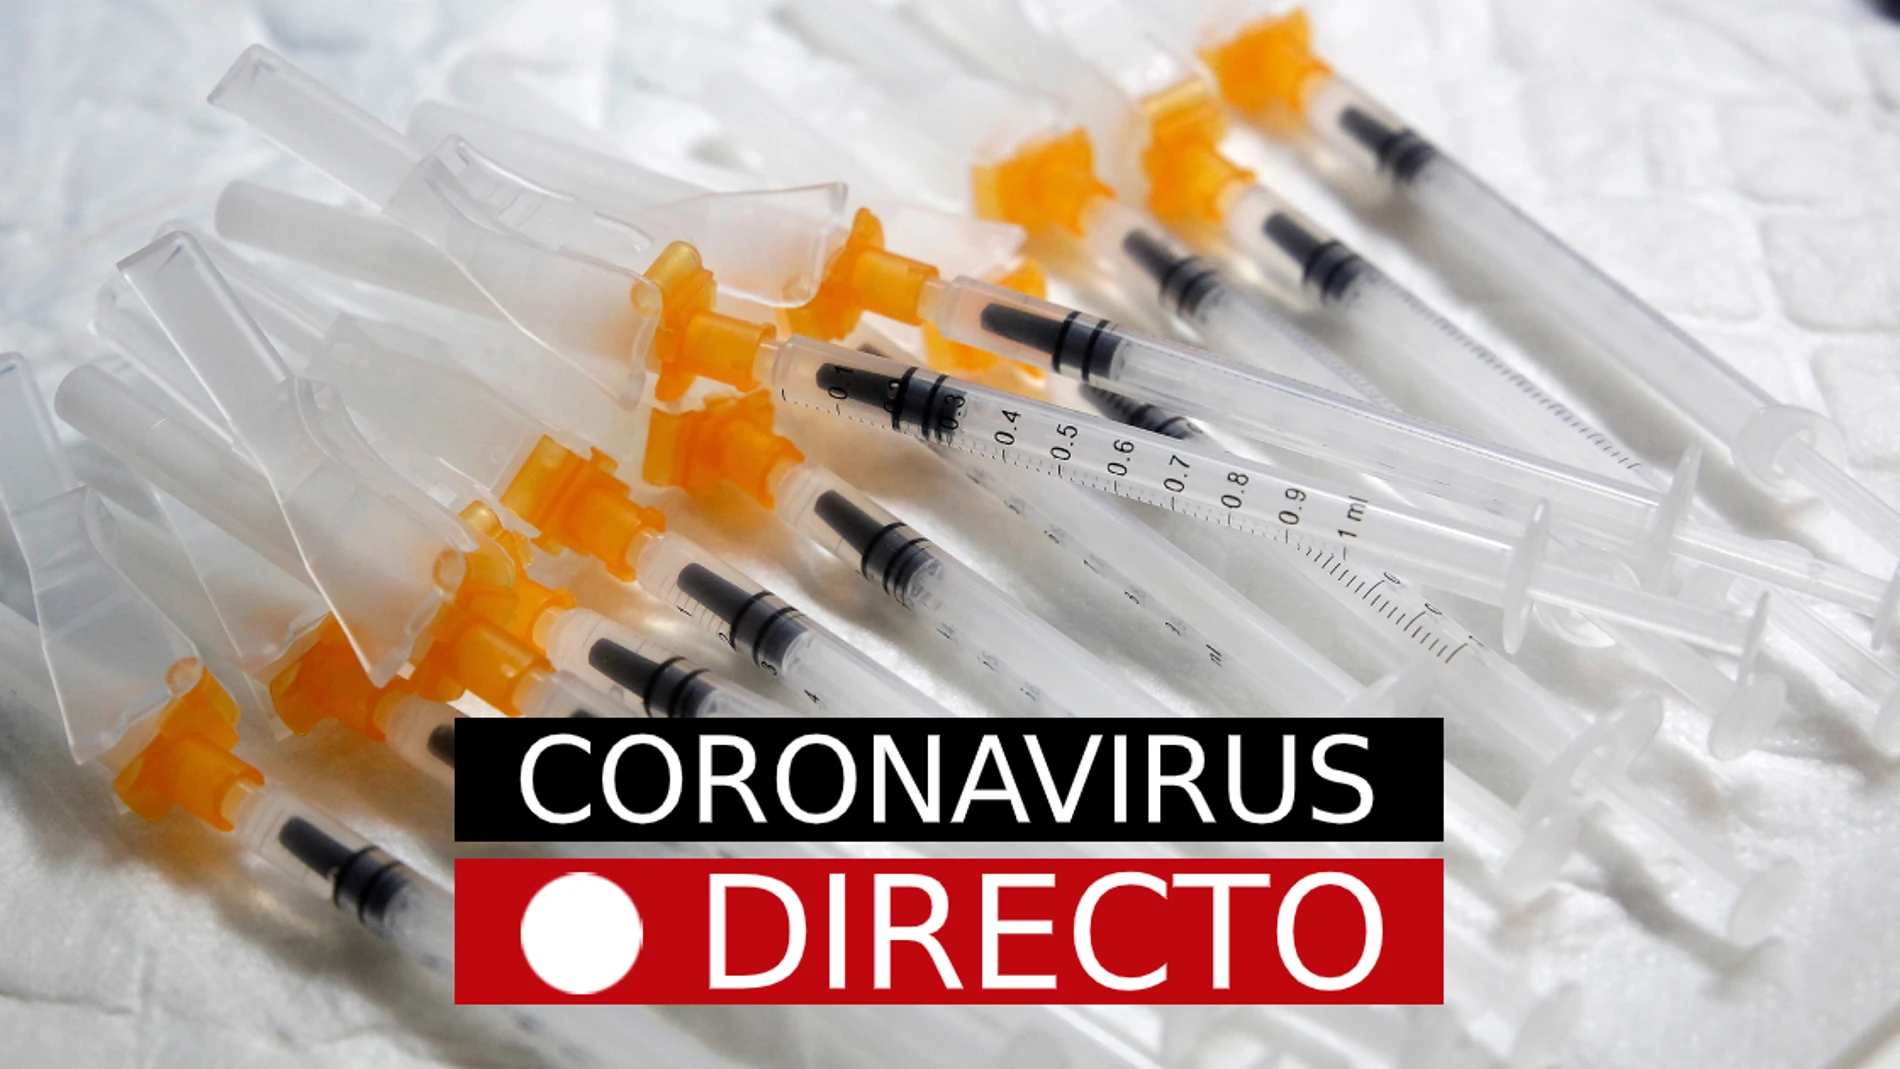 Noticias de Coronavirus, hoy: Última hora en España y el mundo, en directo